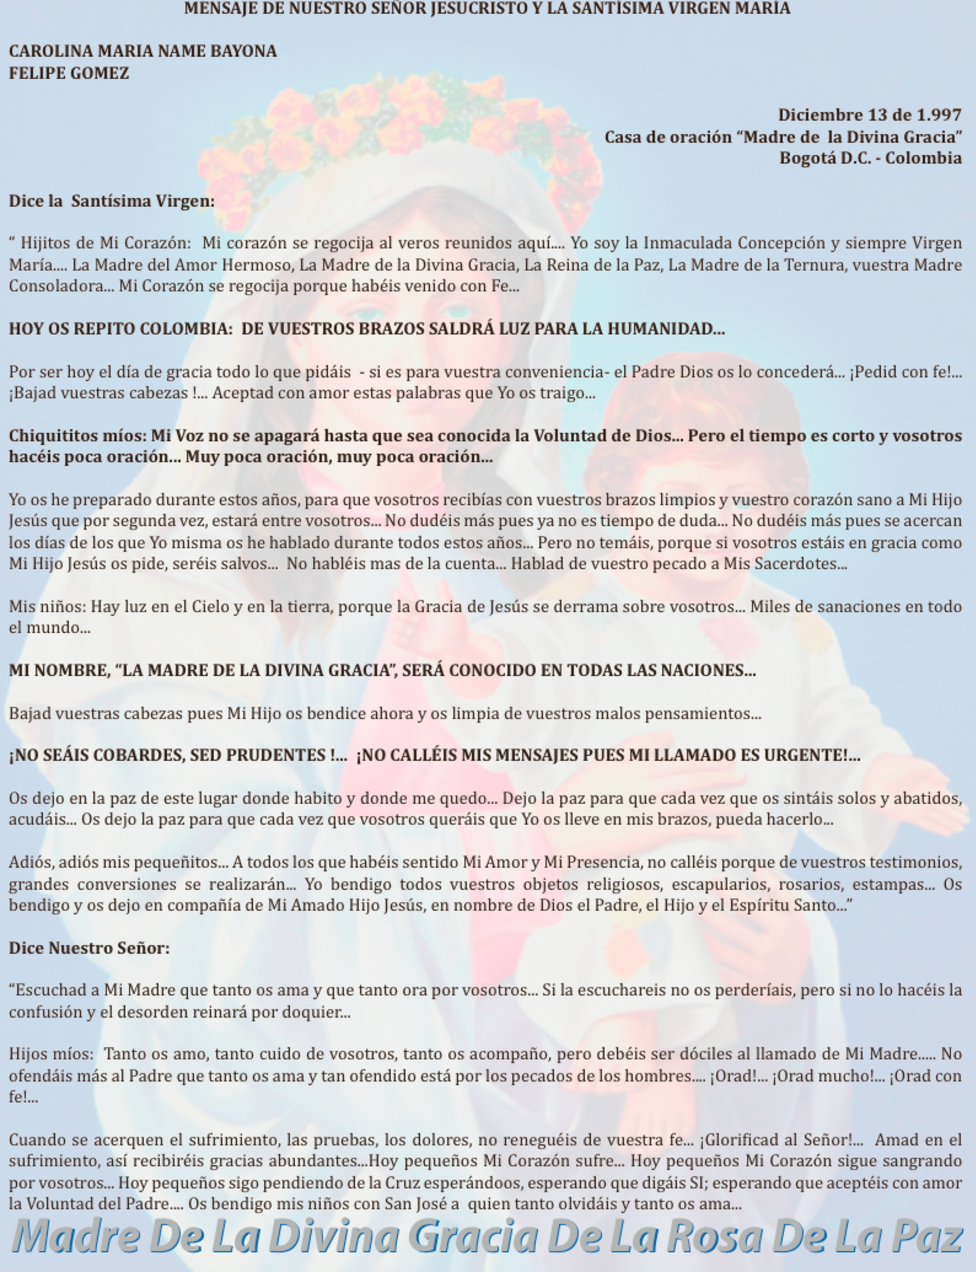 DICIEMBRE 13 de 1997 Bogotá Colombia - mensaje de la virgen